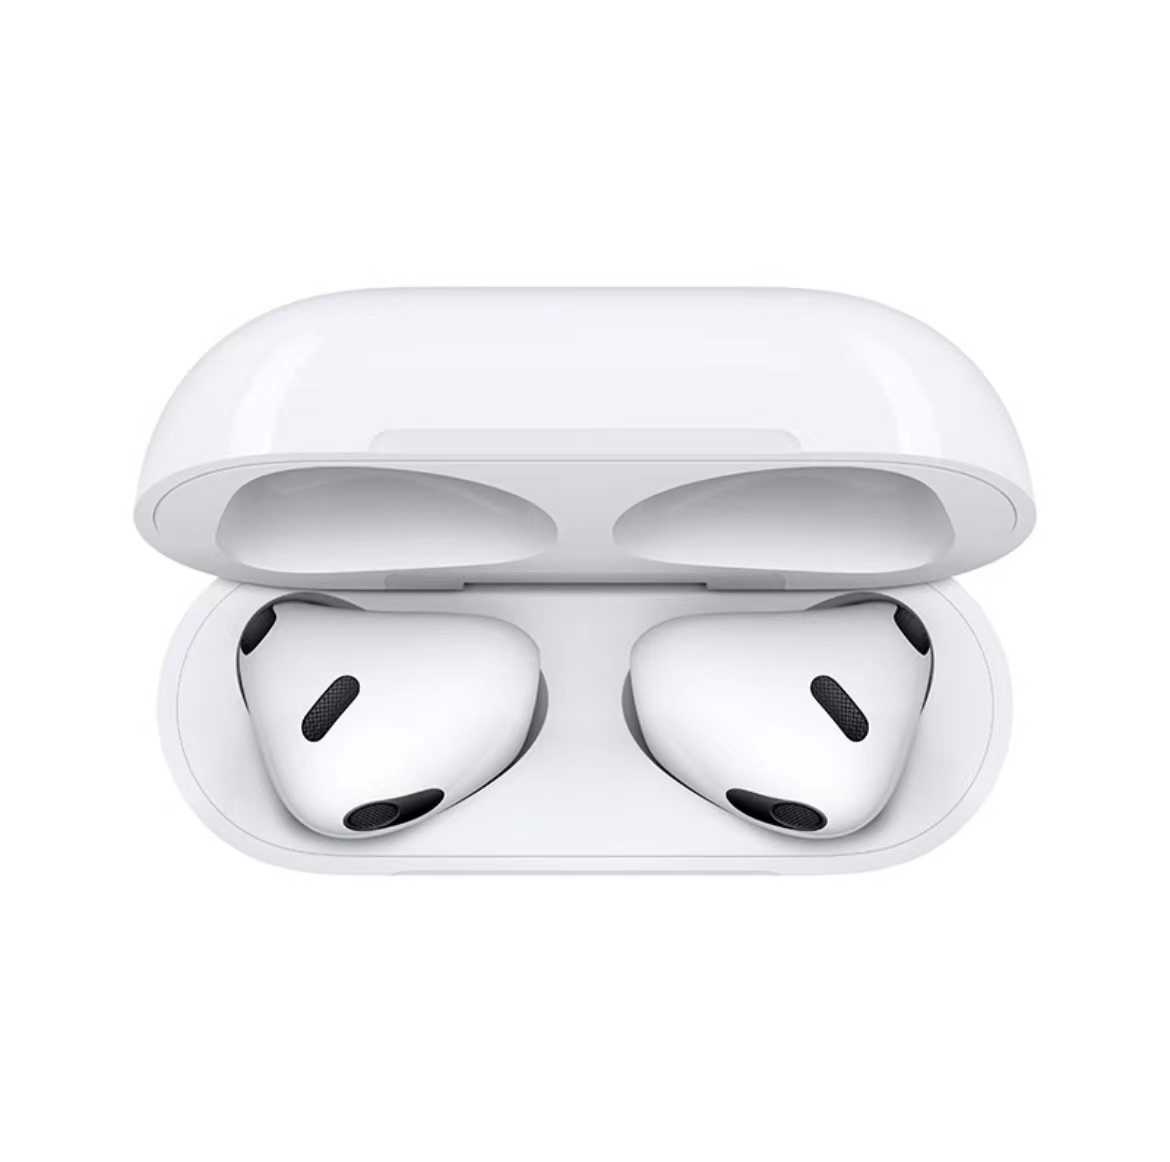 Apple AirPods Pro (第二代) 搭配 MagSafe 充電盒 (USB-C) 無線藍牙耳機1